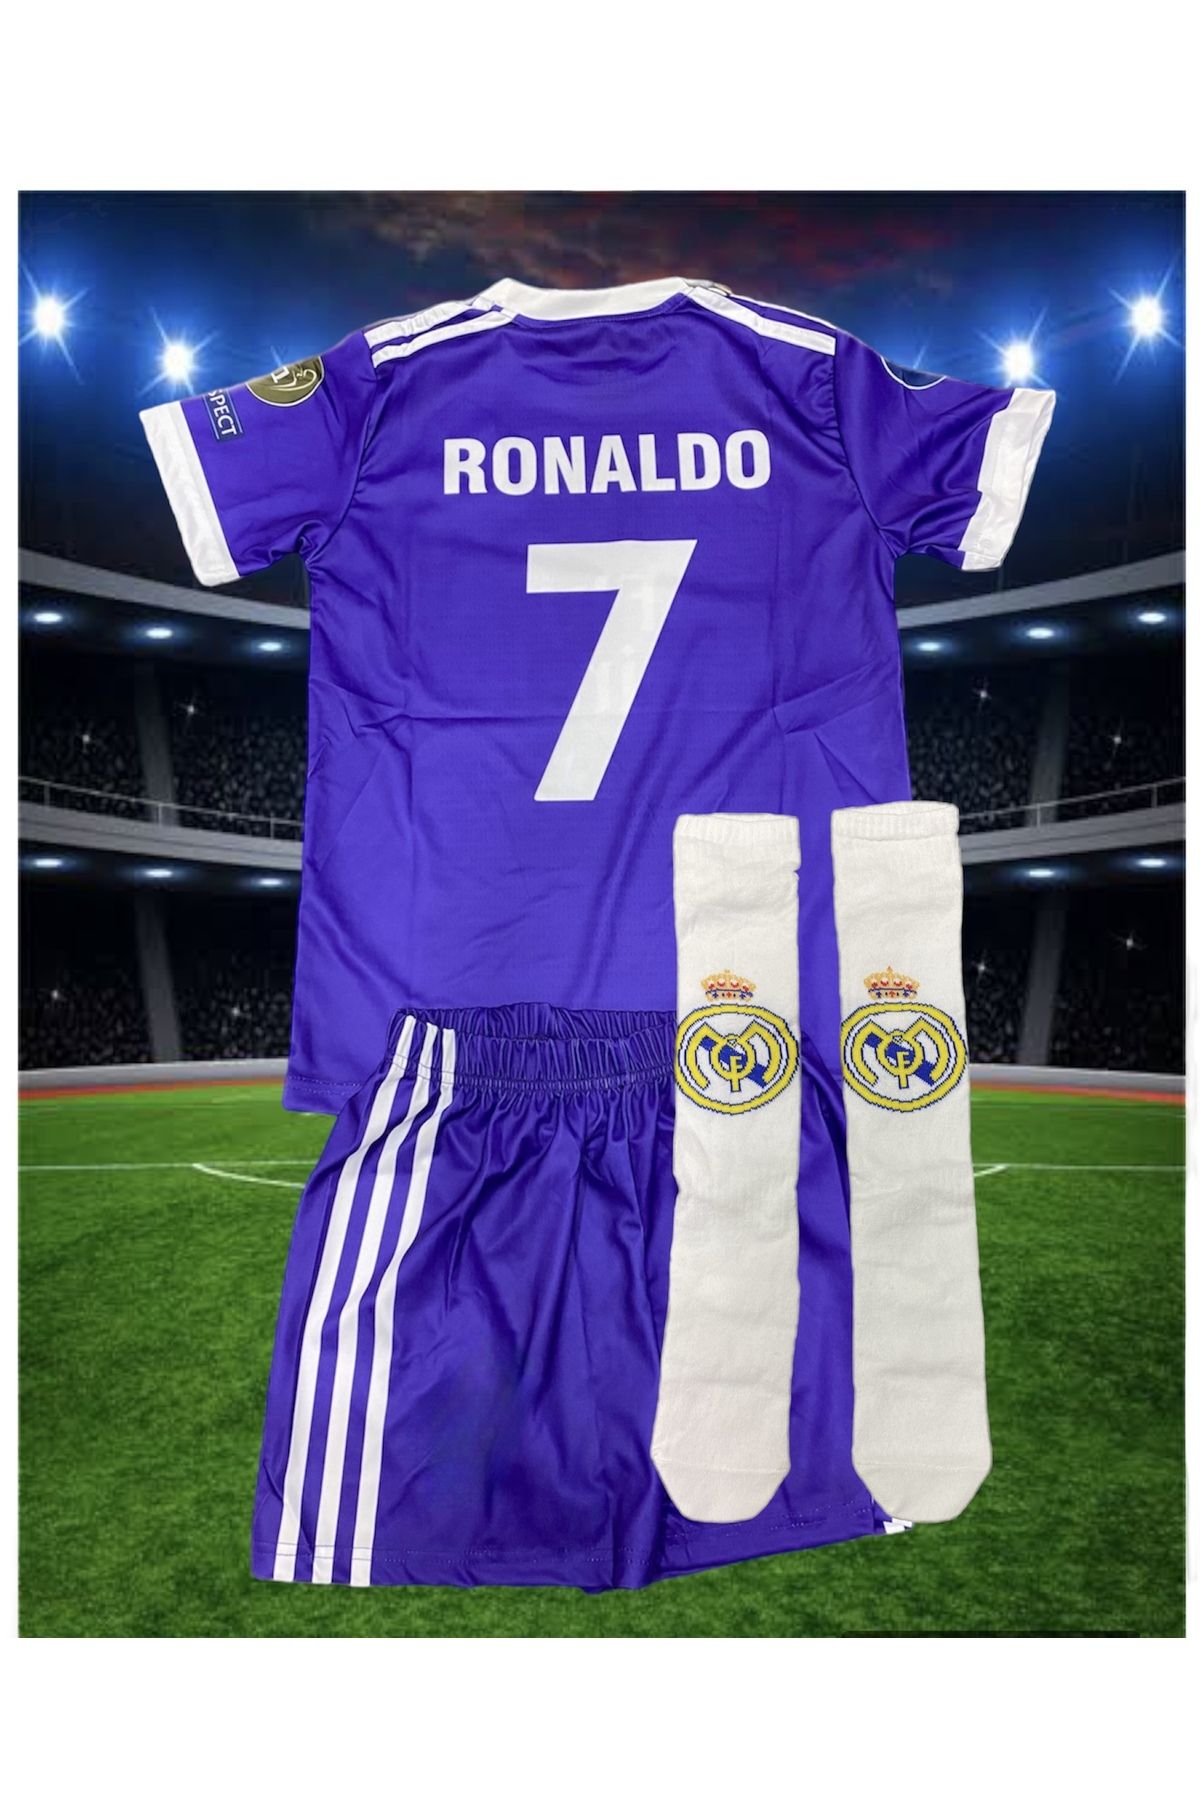 Suq giyim Kopya - Futbol Forma Çocuklar Için 3 Parça Ronaldo 2017 Real Madrid